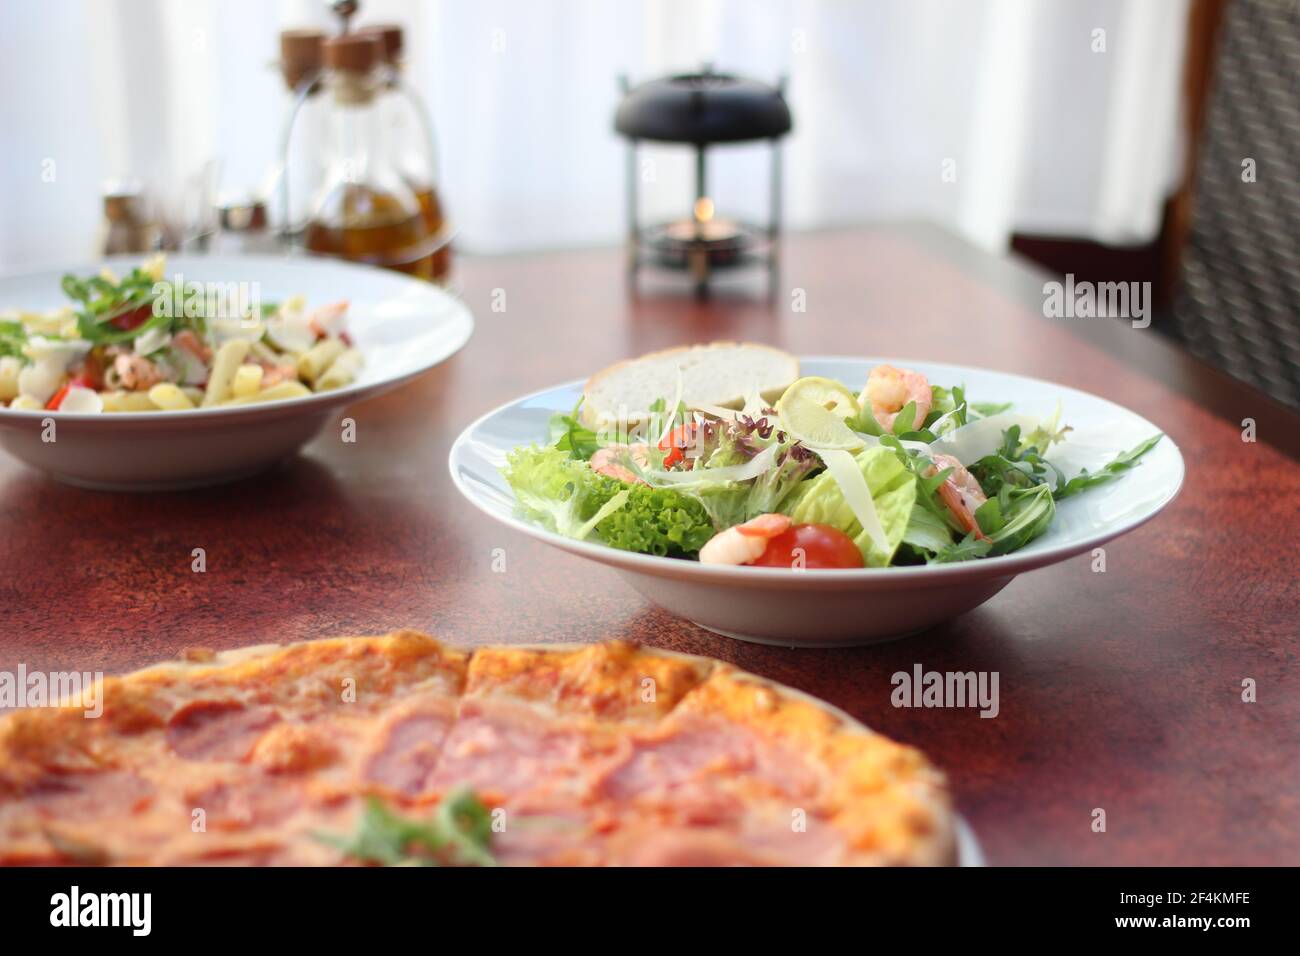 Cibo del ristorante con ingredienti freschi - pizza e insalata fresca Foto Stock